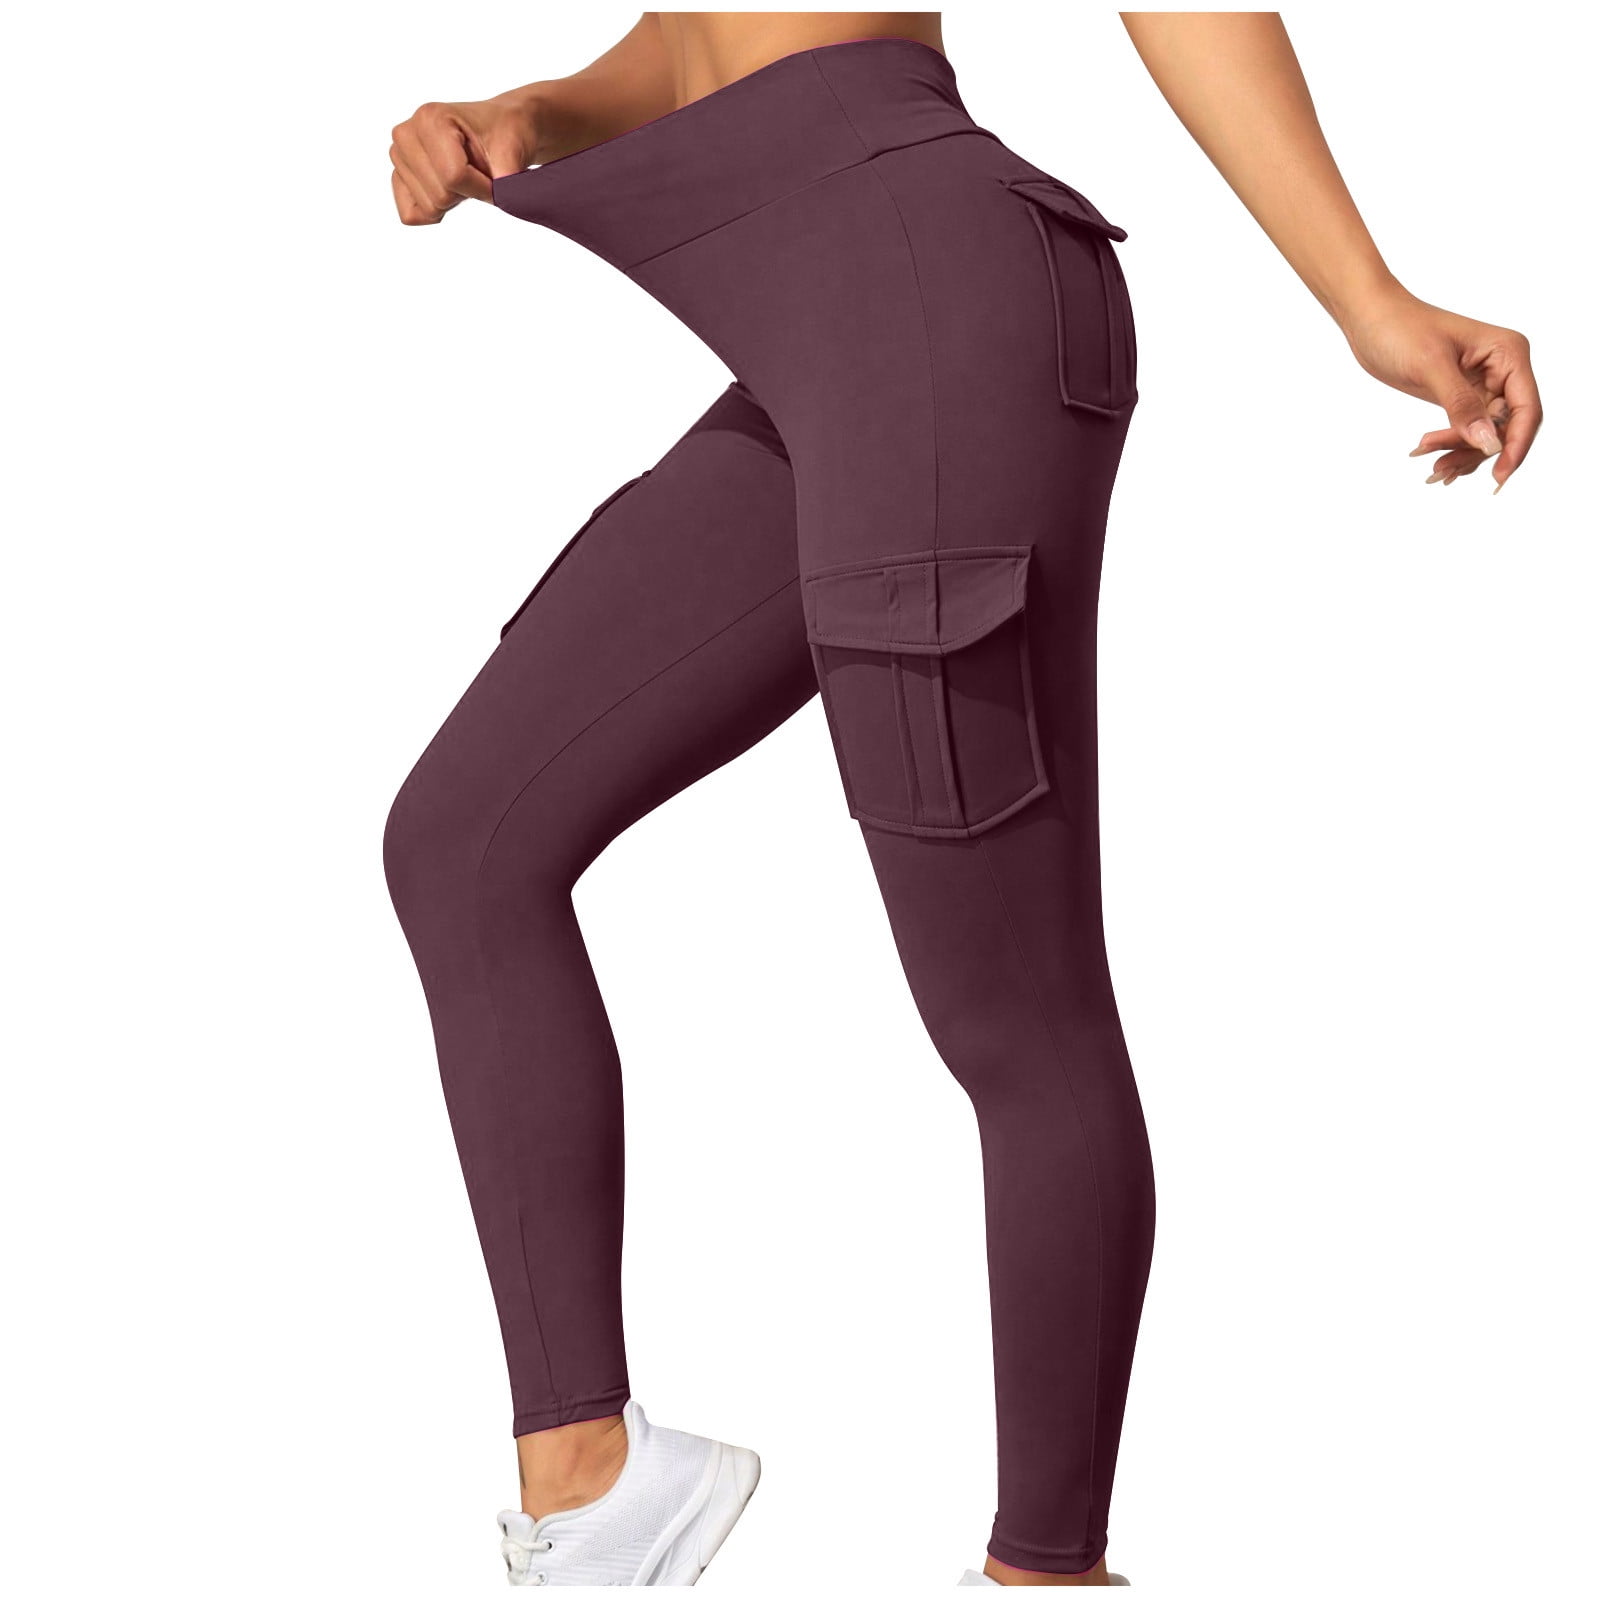 Yoga Leggings for Women Cargo Pants Elastic Drawstring Waist